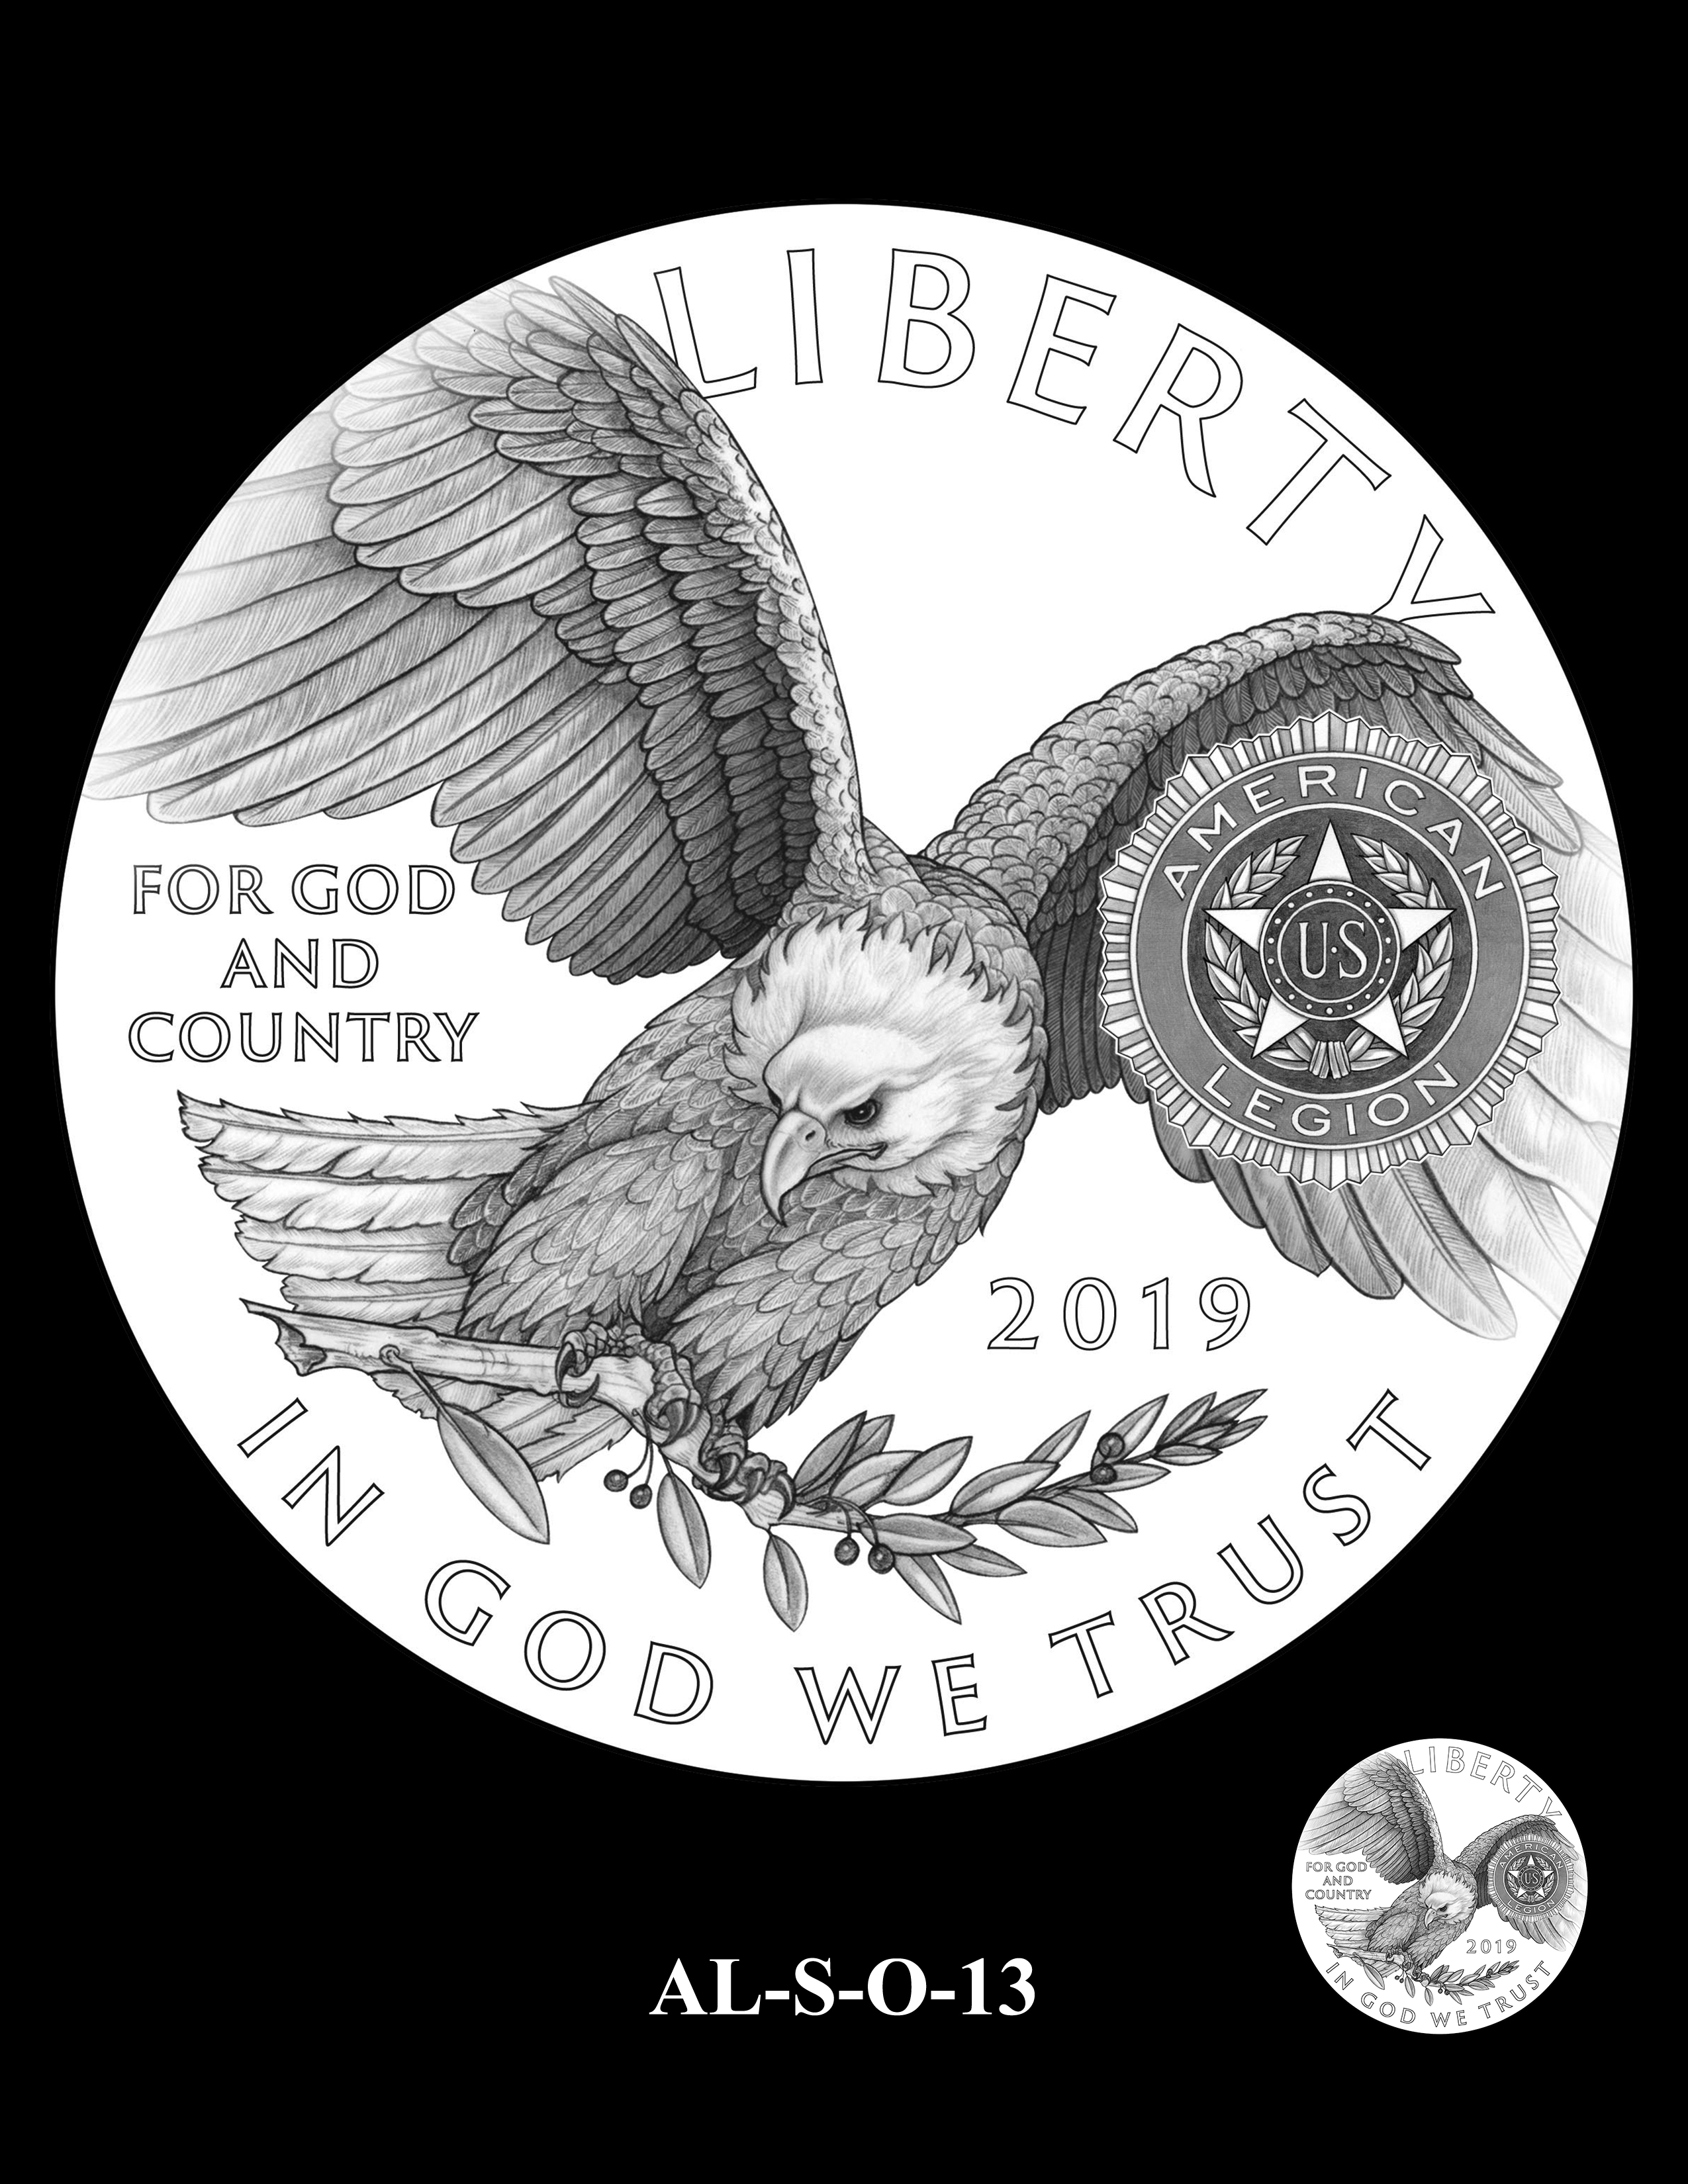 AL-S-O-13 -- 2019 American Legion 100th Anniversary Commemorative Coin Program - Silver Obverse